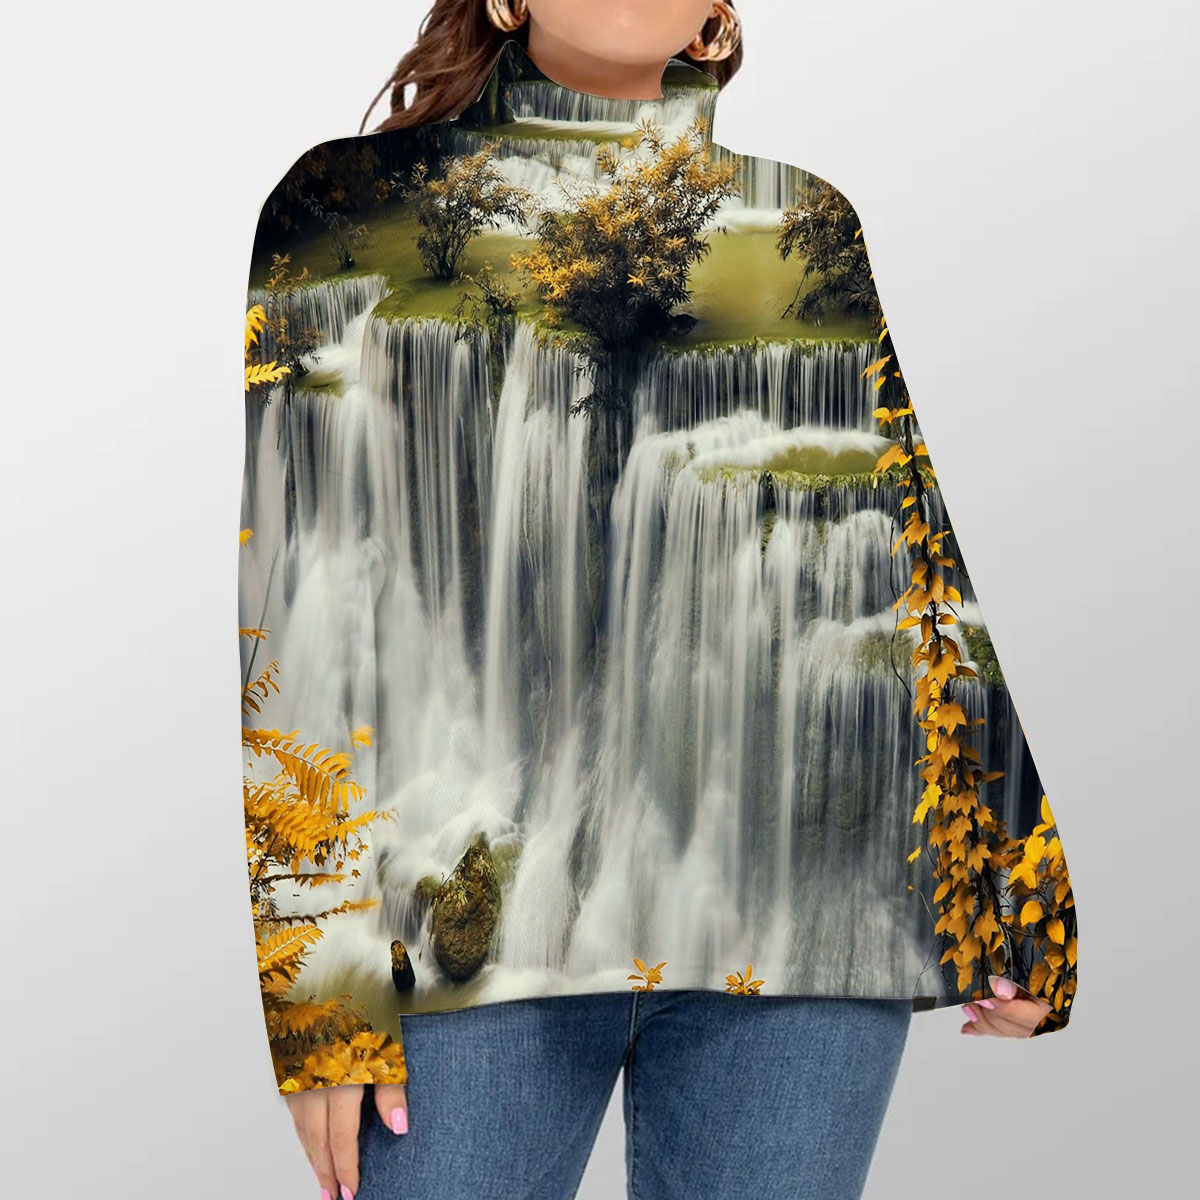 Stunning Autumn Waterfall Turtleneck Sweater